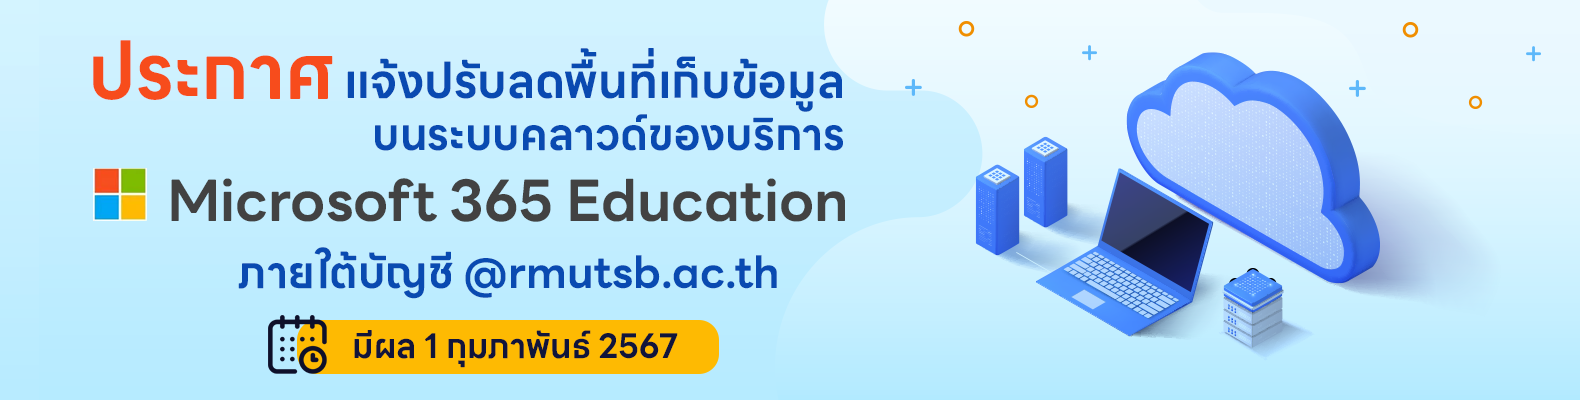 ประกาศ แจ้งปรับลดพื้นที่เก็บข้อมูลบนระบบคลาวด์ของบริการ Microsoft 365 Education ภายใต้บัญชี @rmutsb.ac.th